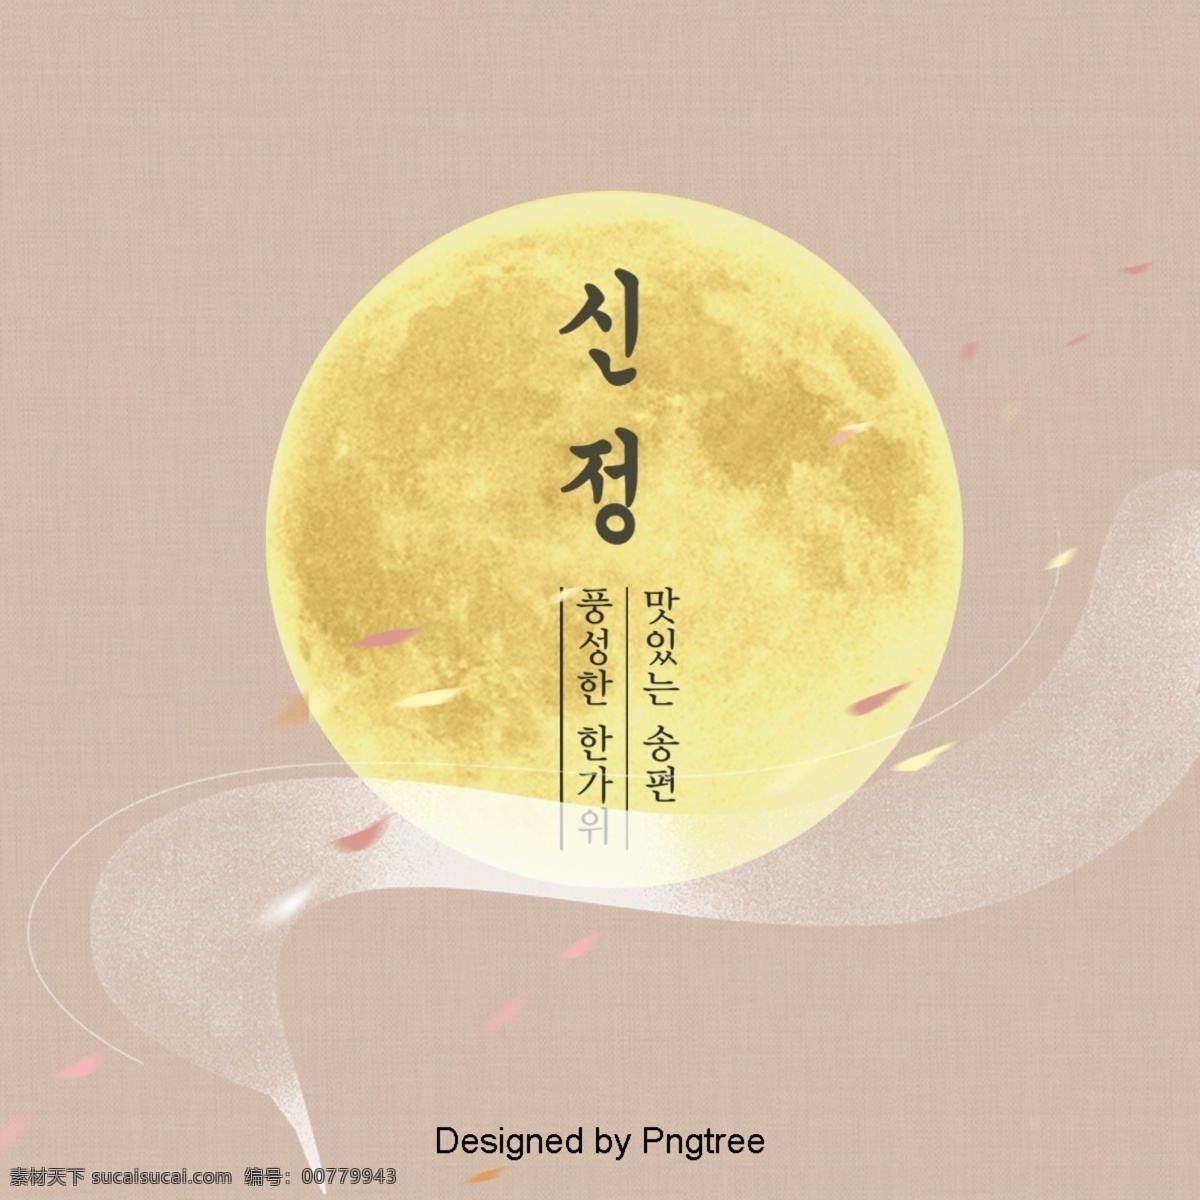 新年 韩国 传统节日 背景 新 下 年 郑 月亮 韩语 复古 怀旧 传统